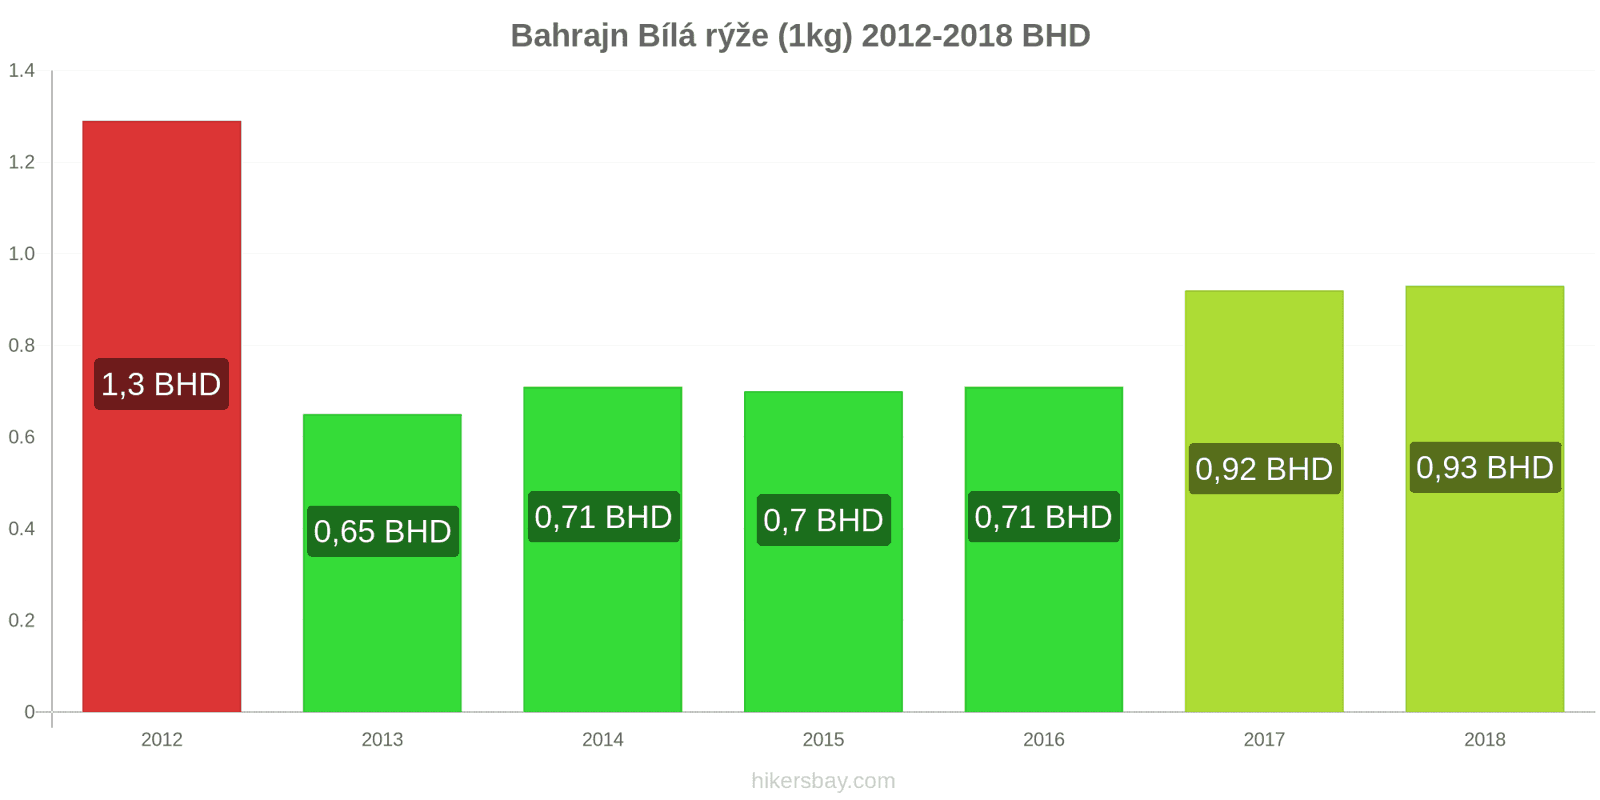 Bahrajn změny cen Kilo bílé rýže hikersbay.com